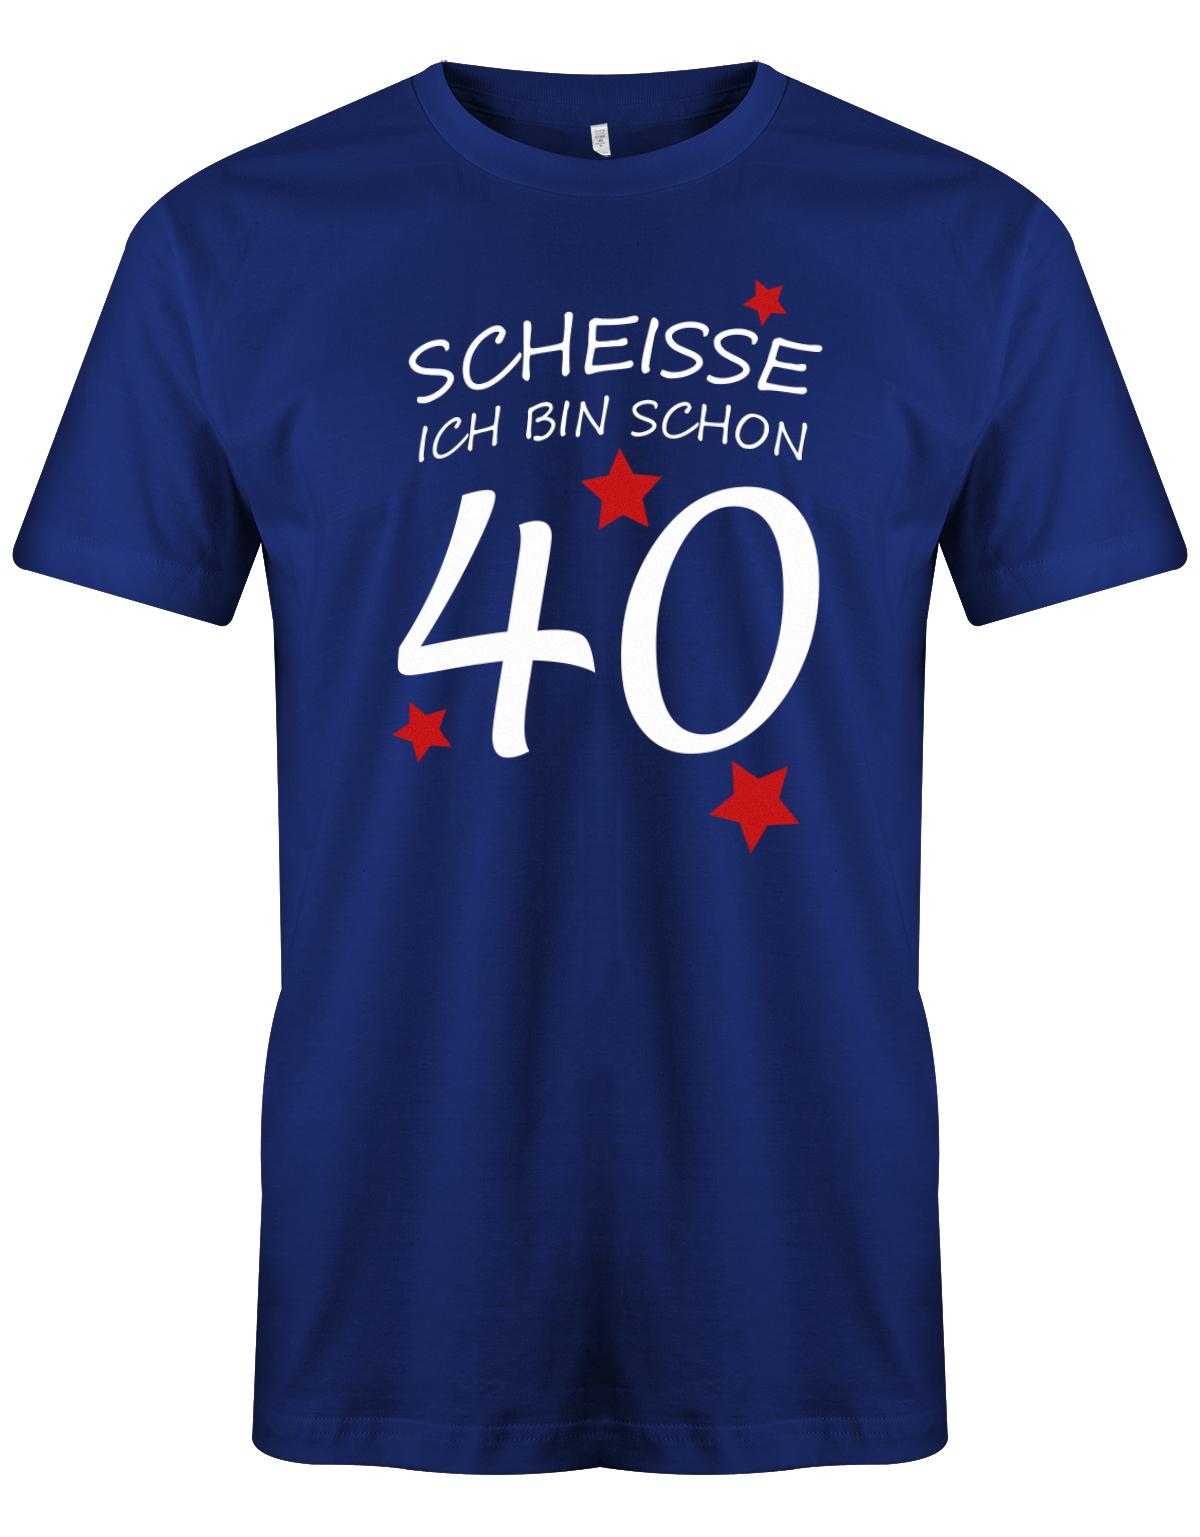 Scheisse ich bin schon 40 - T-Shirt 40 Geburtstag Männer - TShirt 1983 myShirtStore Royalblau